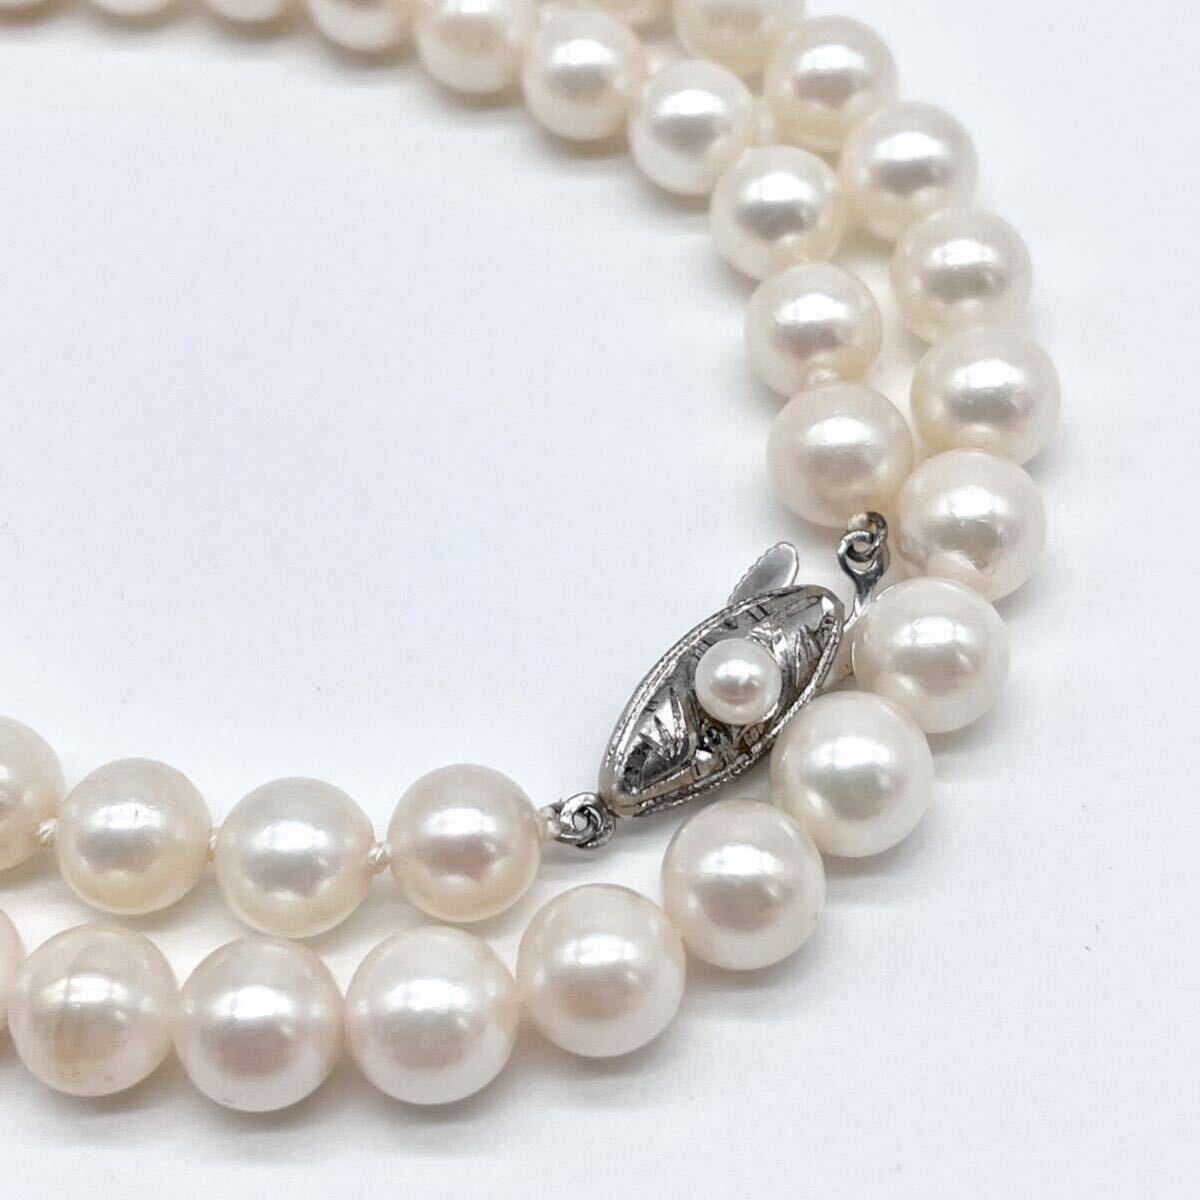 テリ強 アコヤ真珠 ネックレス 6.5-6.8mm アコヤパール ラウンド pearl necklace jewelry silverの画像1